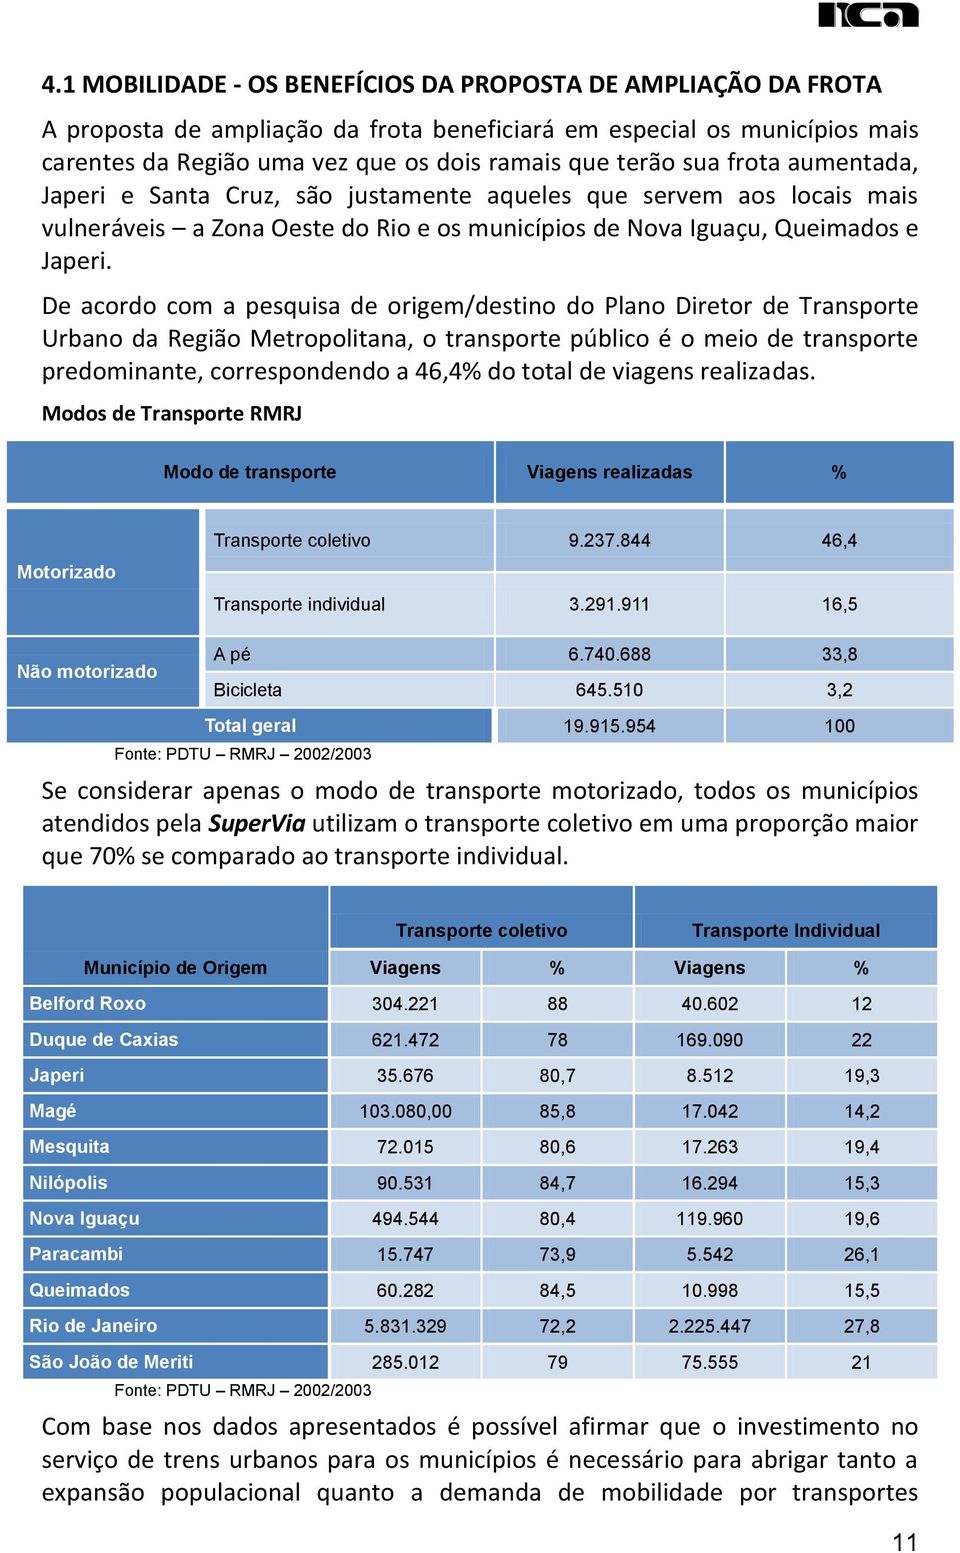 De acordo com a pesquisa de origem/destino do Plano Diretor de Transporte Urbano da Região Metropolitana, o transporte público é o meio de transporte predominante, correspondendo a 46,4% do total de